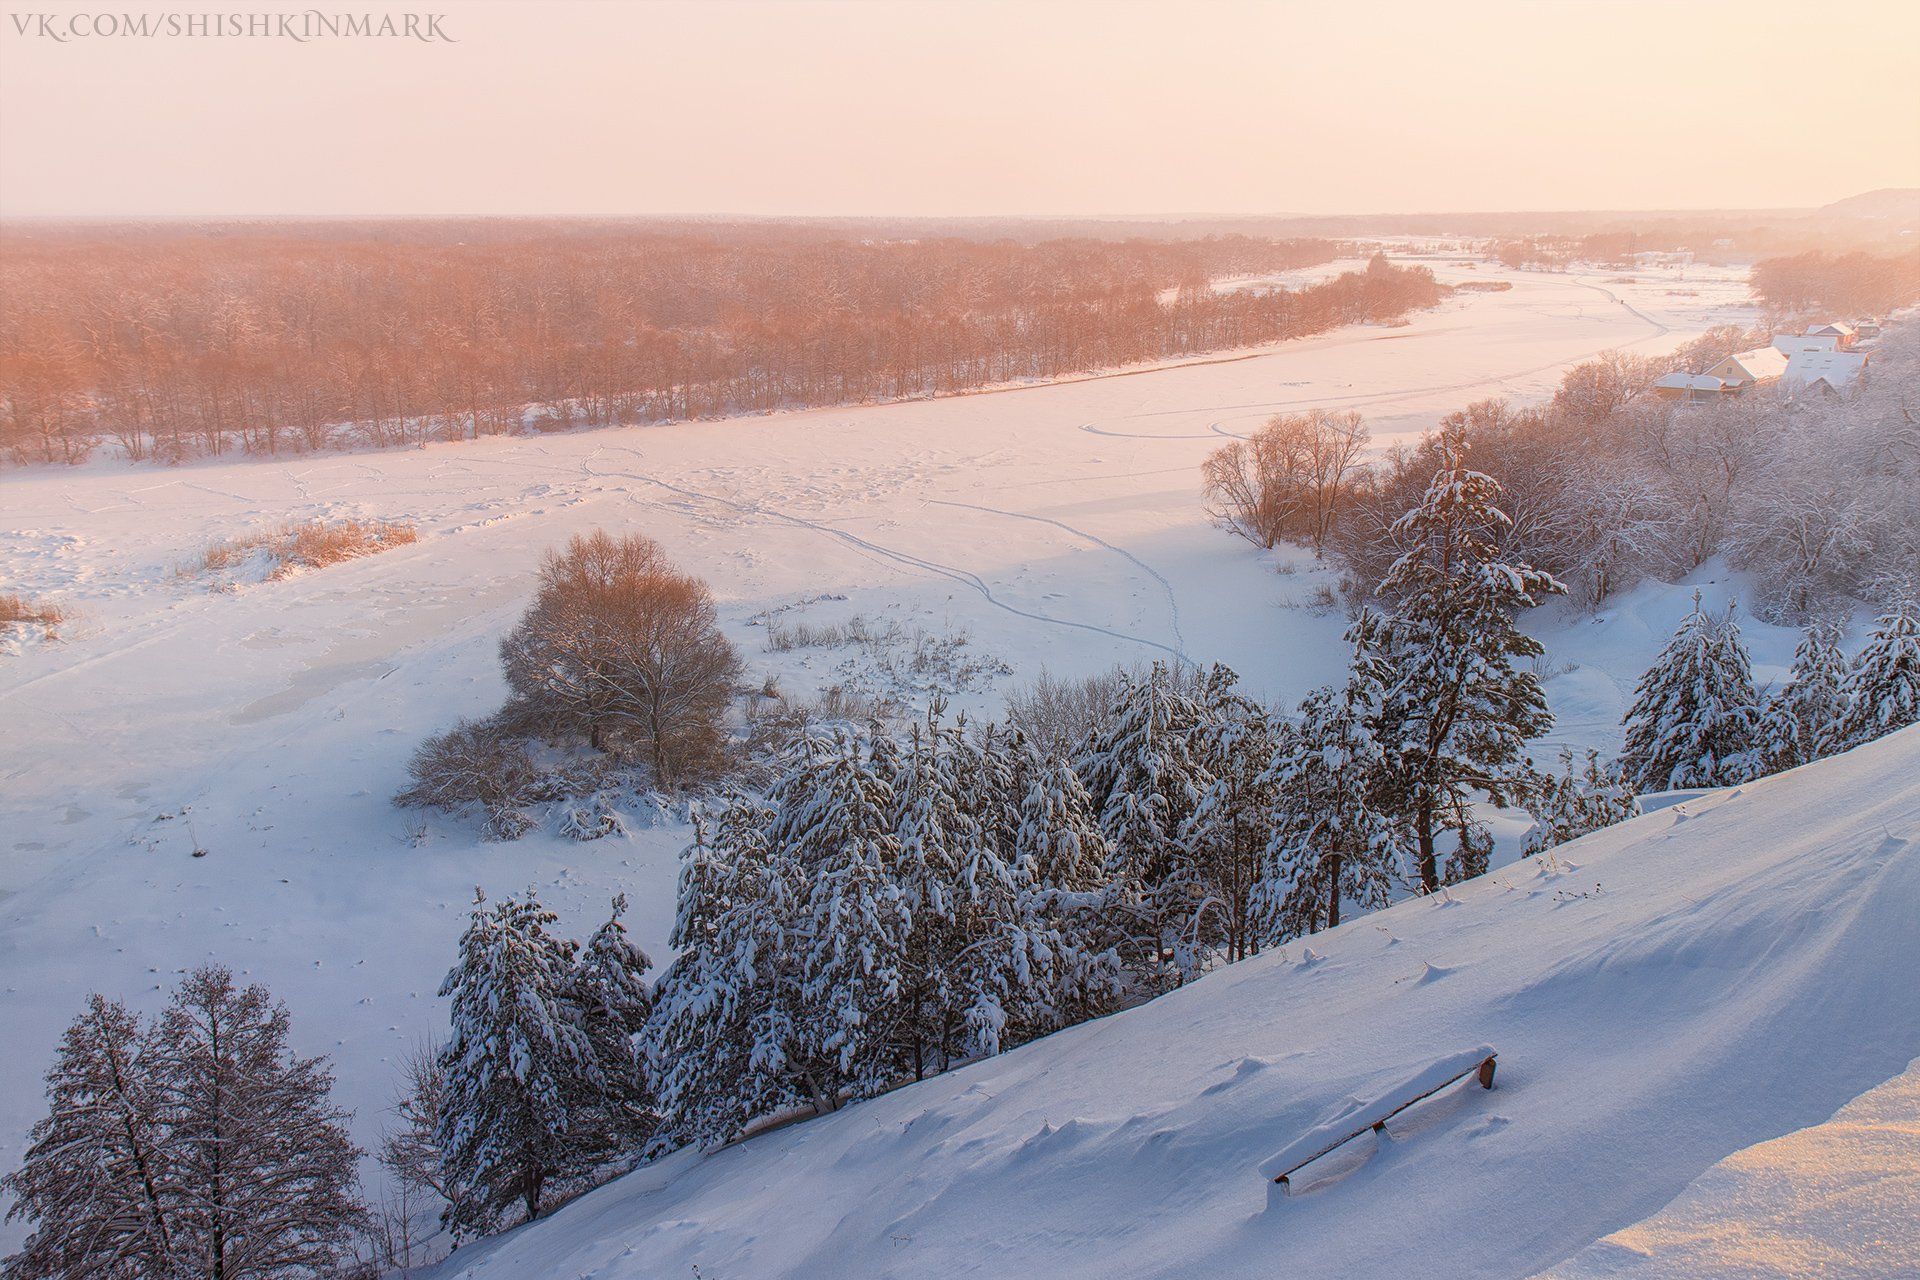 пейзаж, природа, красота, закат, зима, снег, деревья, Марк Шишкин